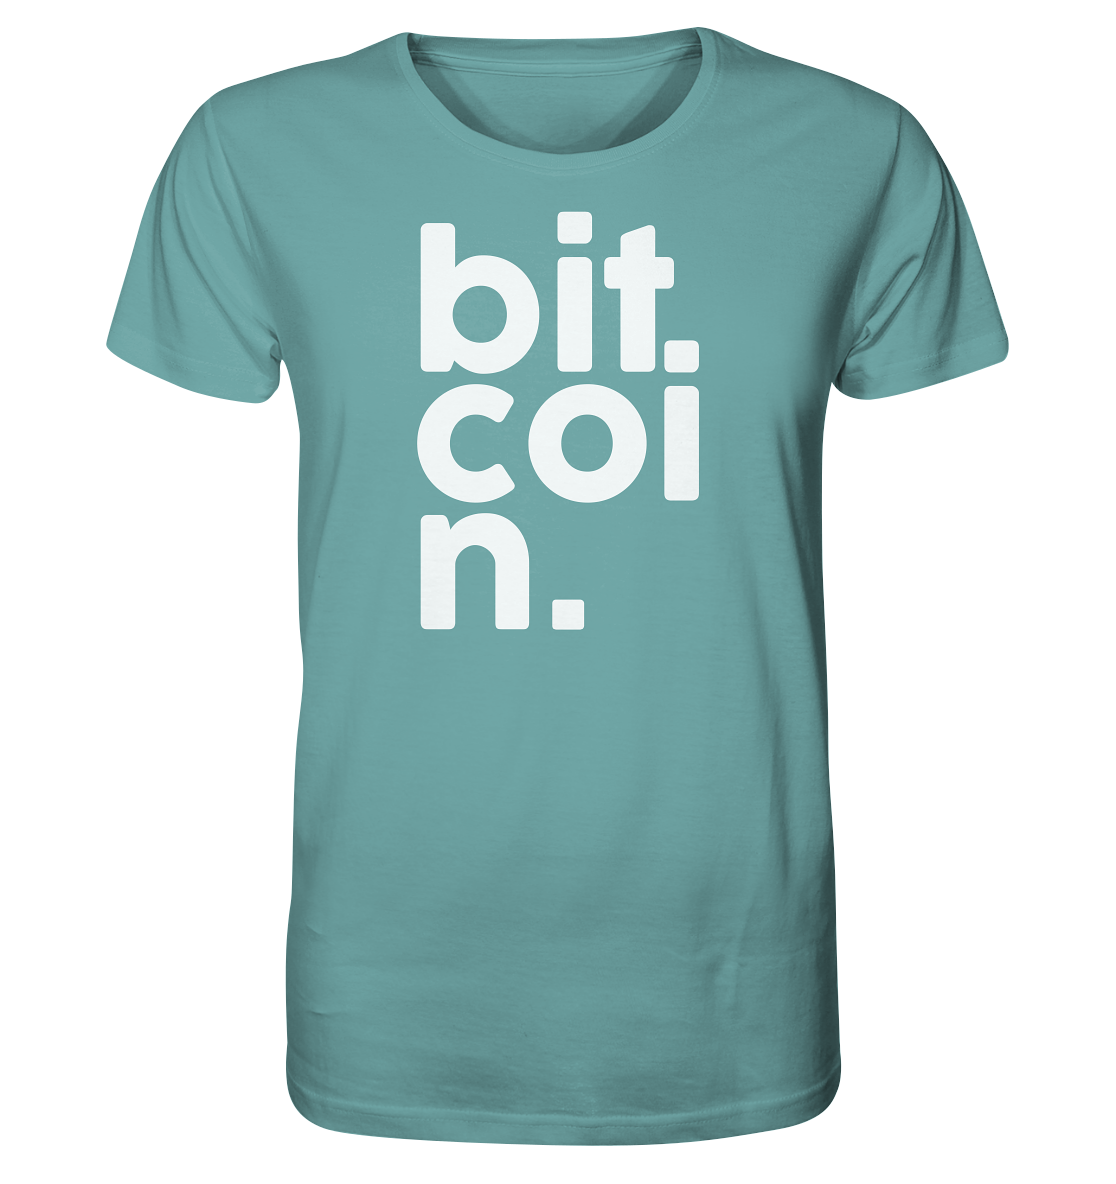 Bitcoin "bit coi n"  - Organic Shirt